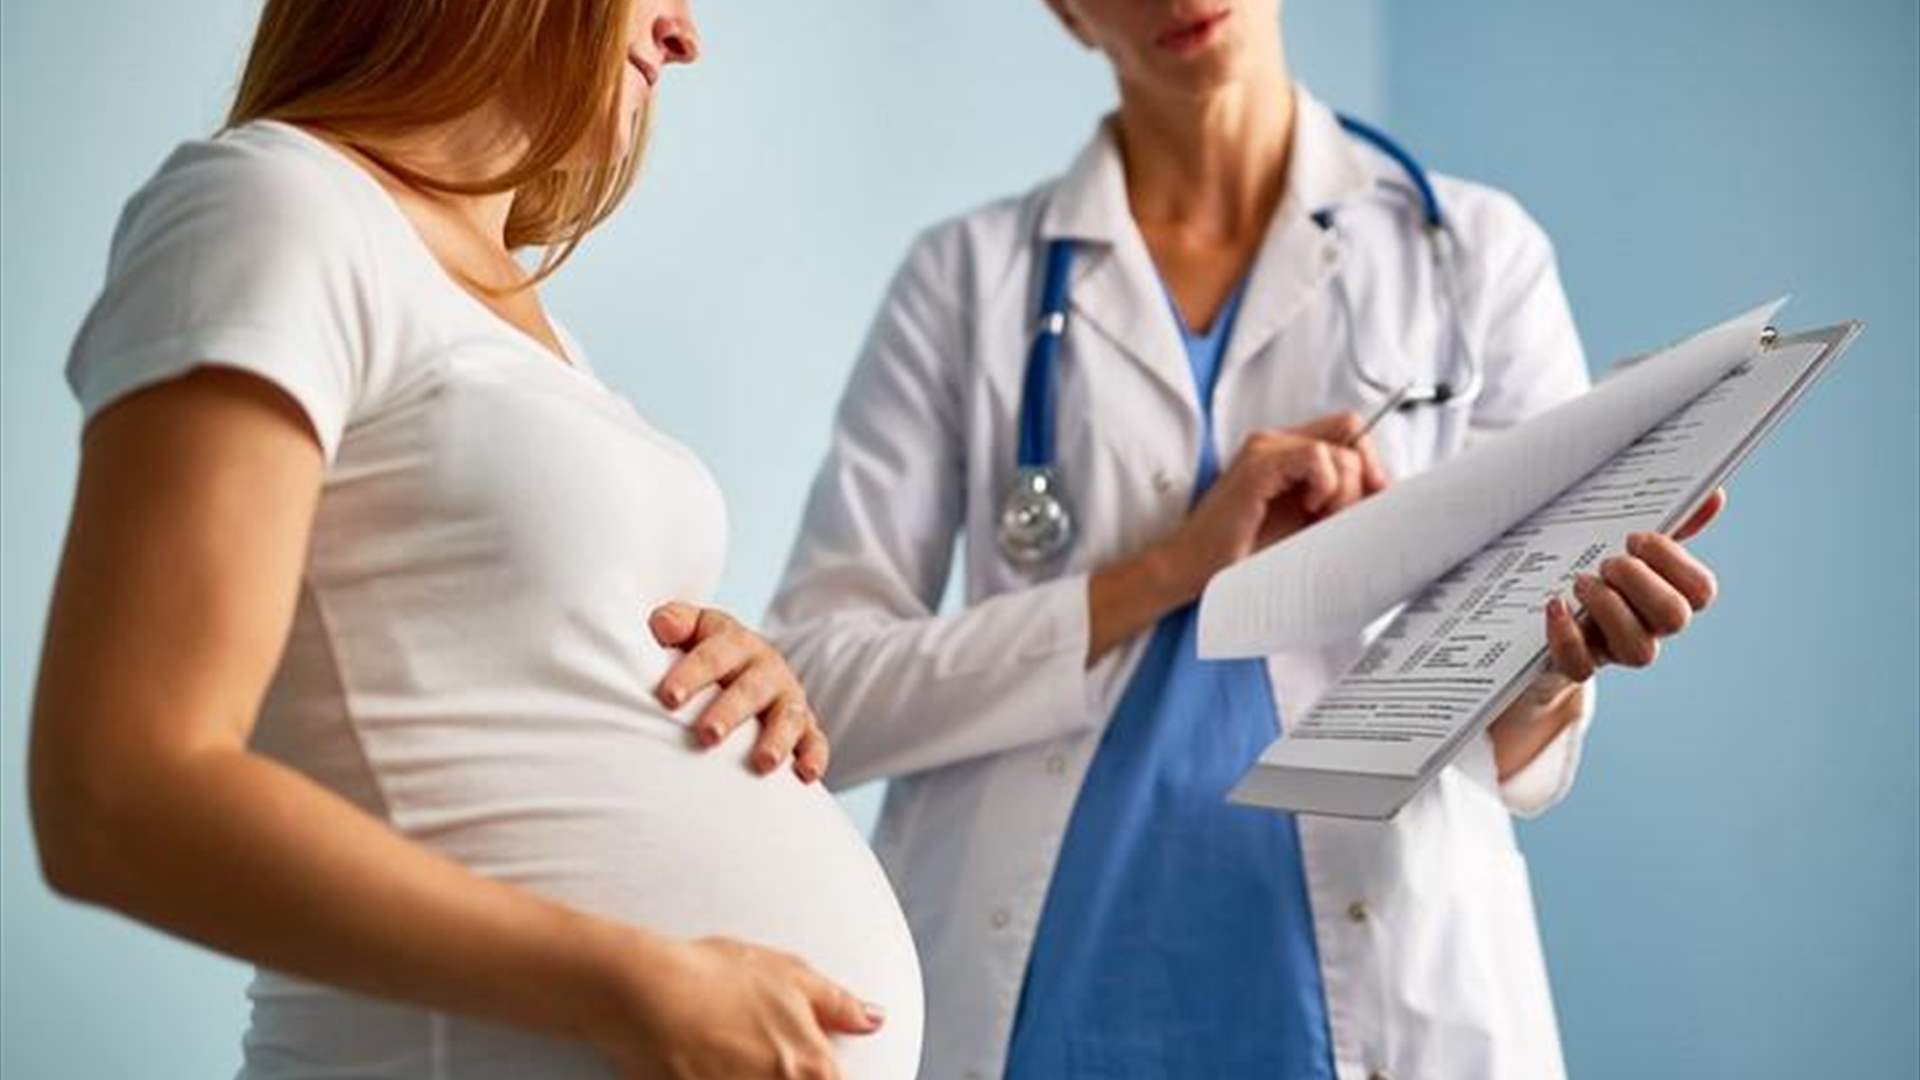 ولادة مبكرة من كل 10 حالات في الولايات المتحدة مرتبطة بتعرض الحوامل للفثالات